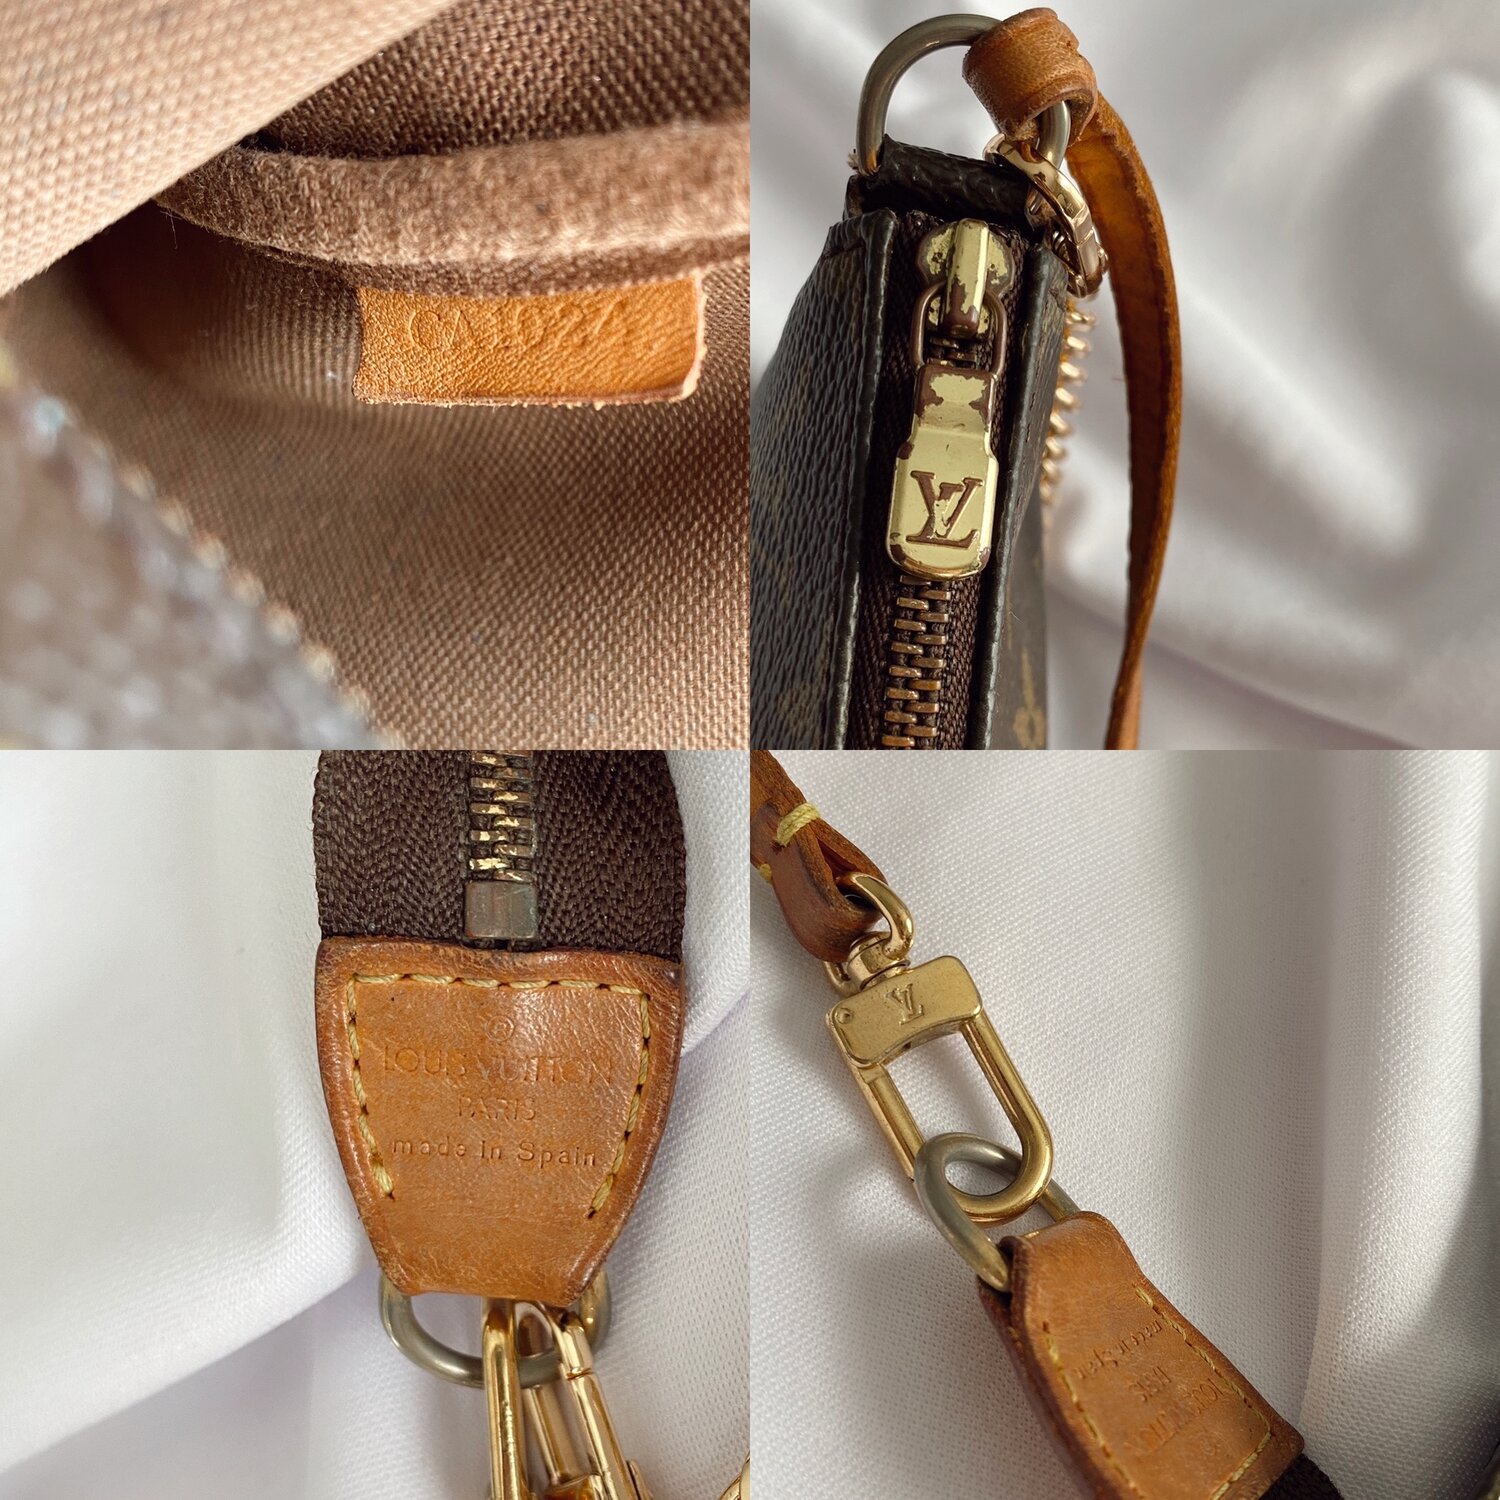 LOUIS VUITTON Vintage Gold Belt with Louis Vuitton Box– Wag N' Purr Shop